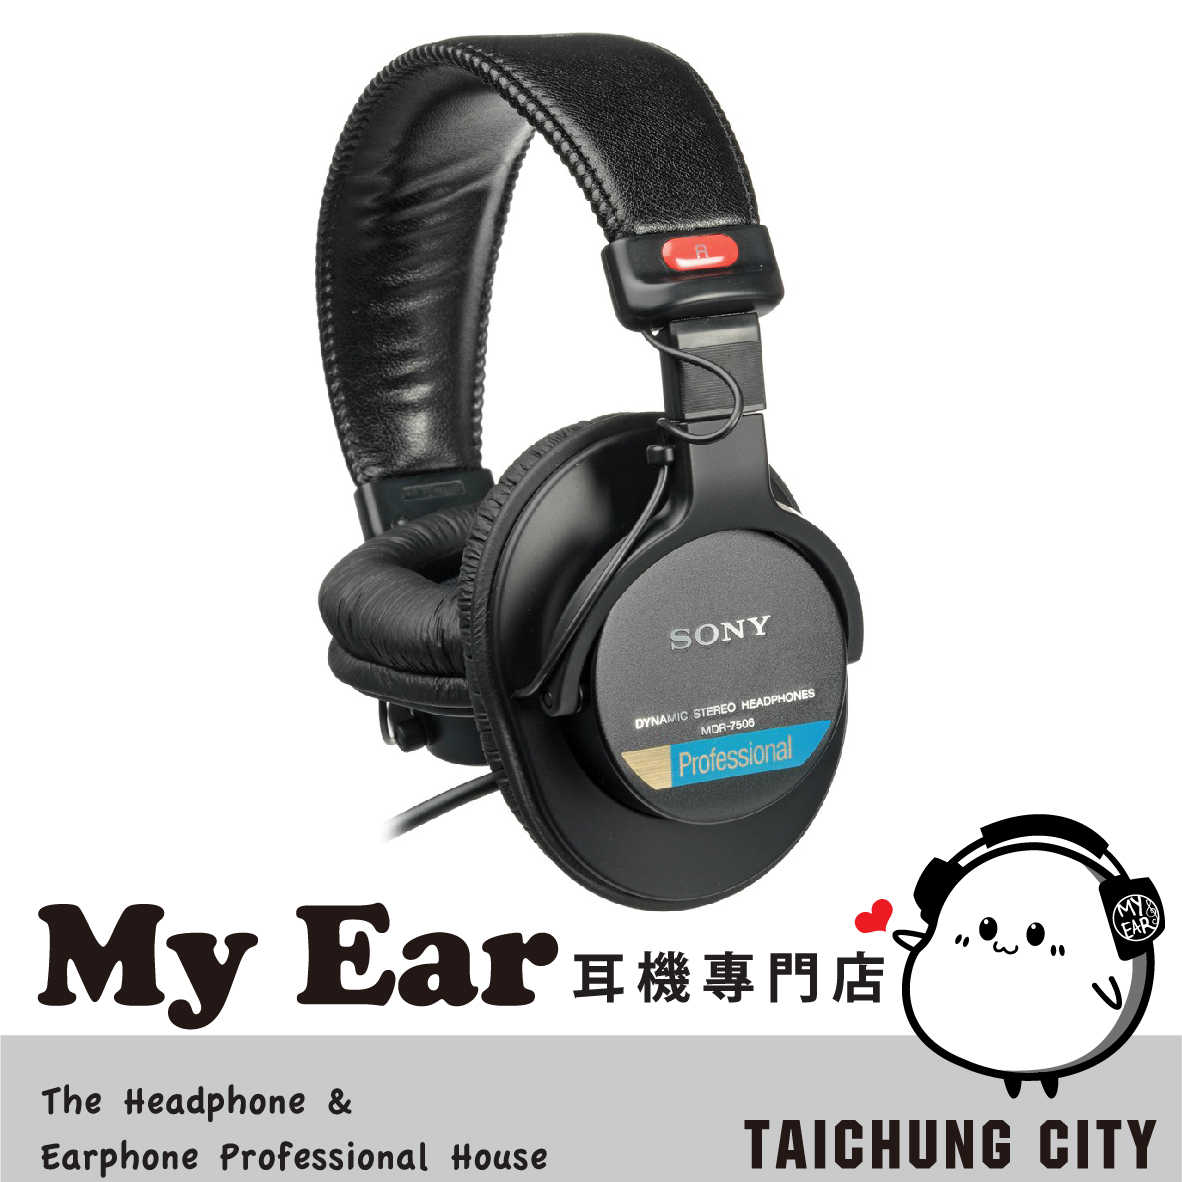 Sony 索尼 MDR-7506 專業 監聽耳機 | My Ear 耳機專門店